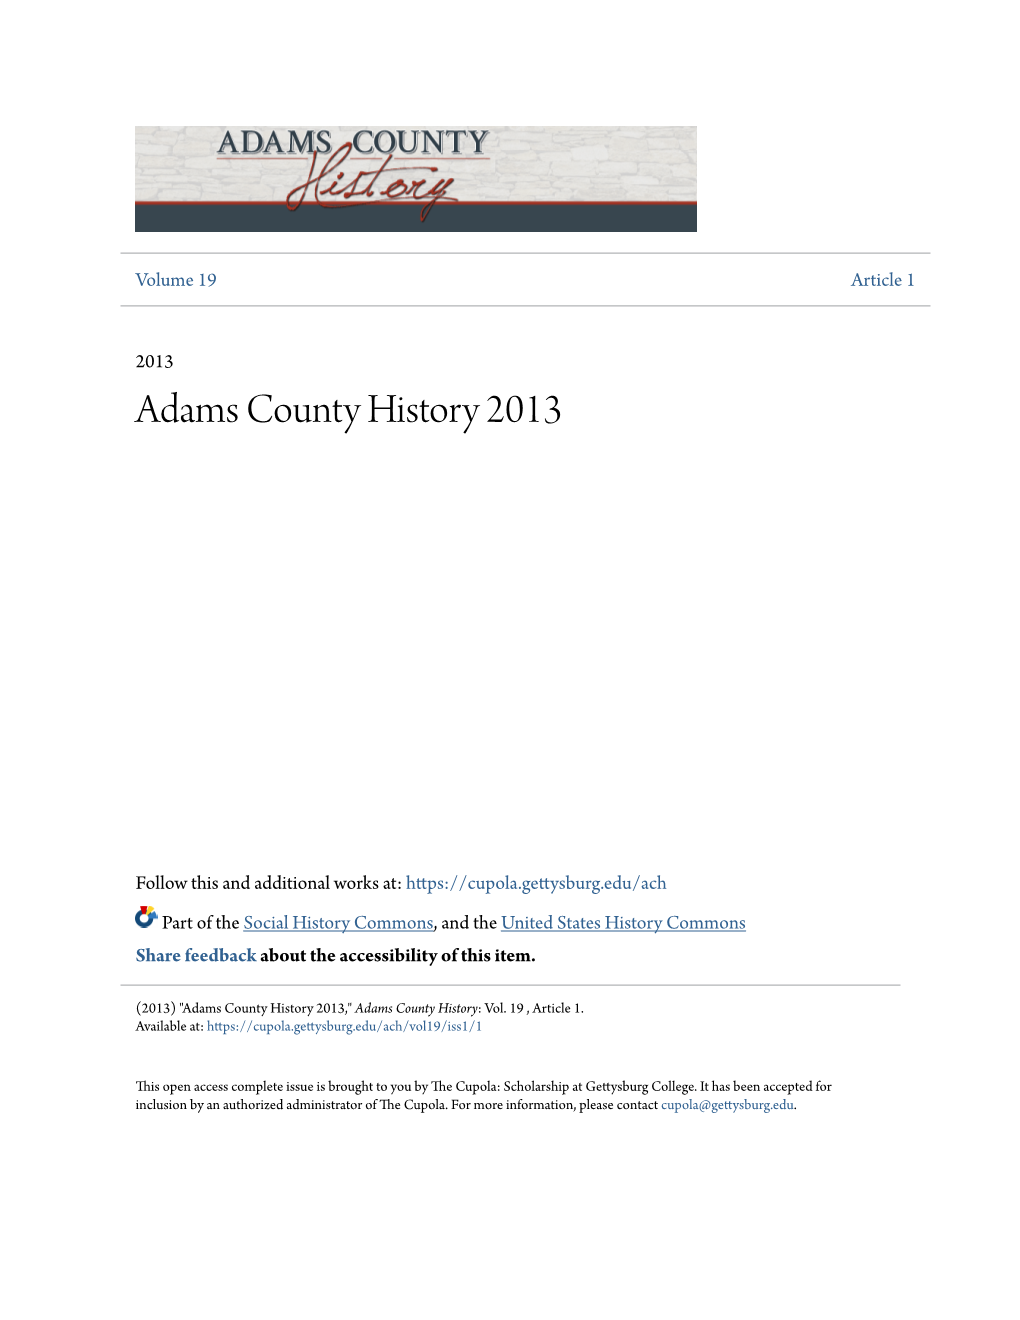 Adams County History 2013